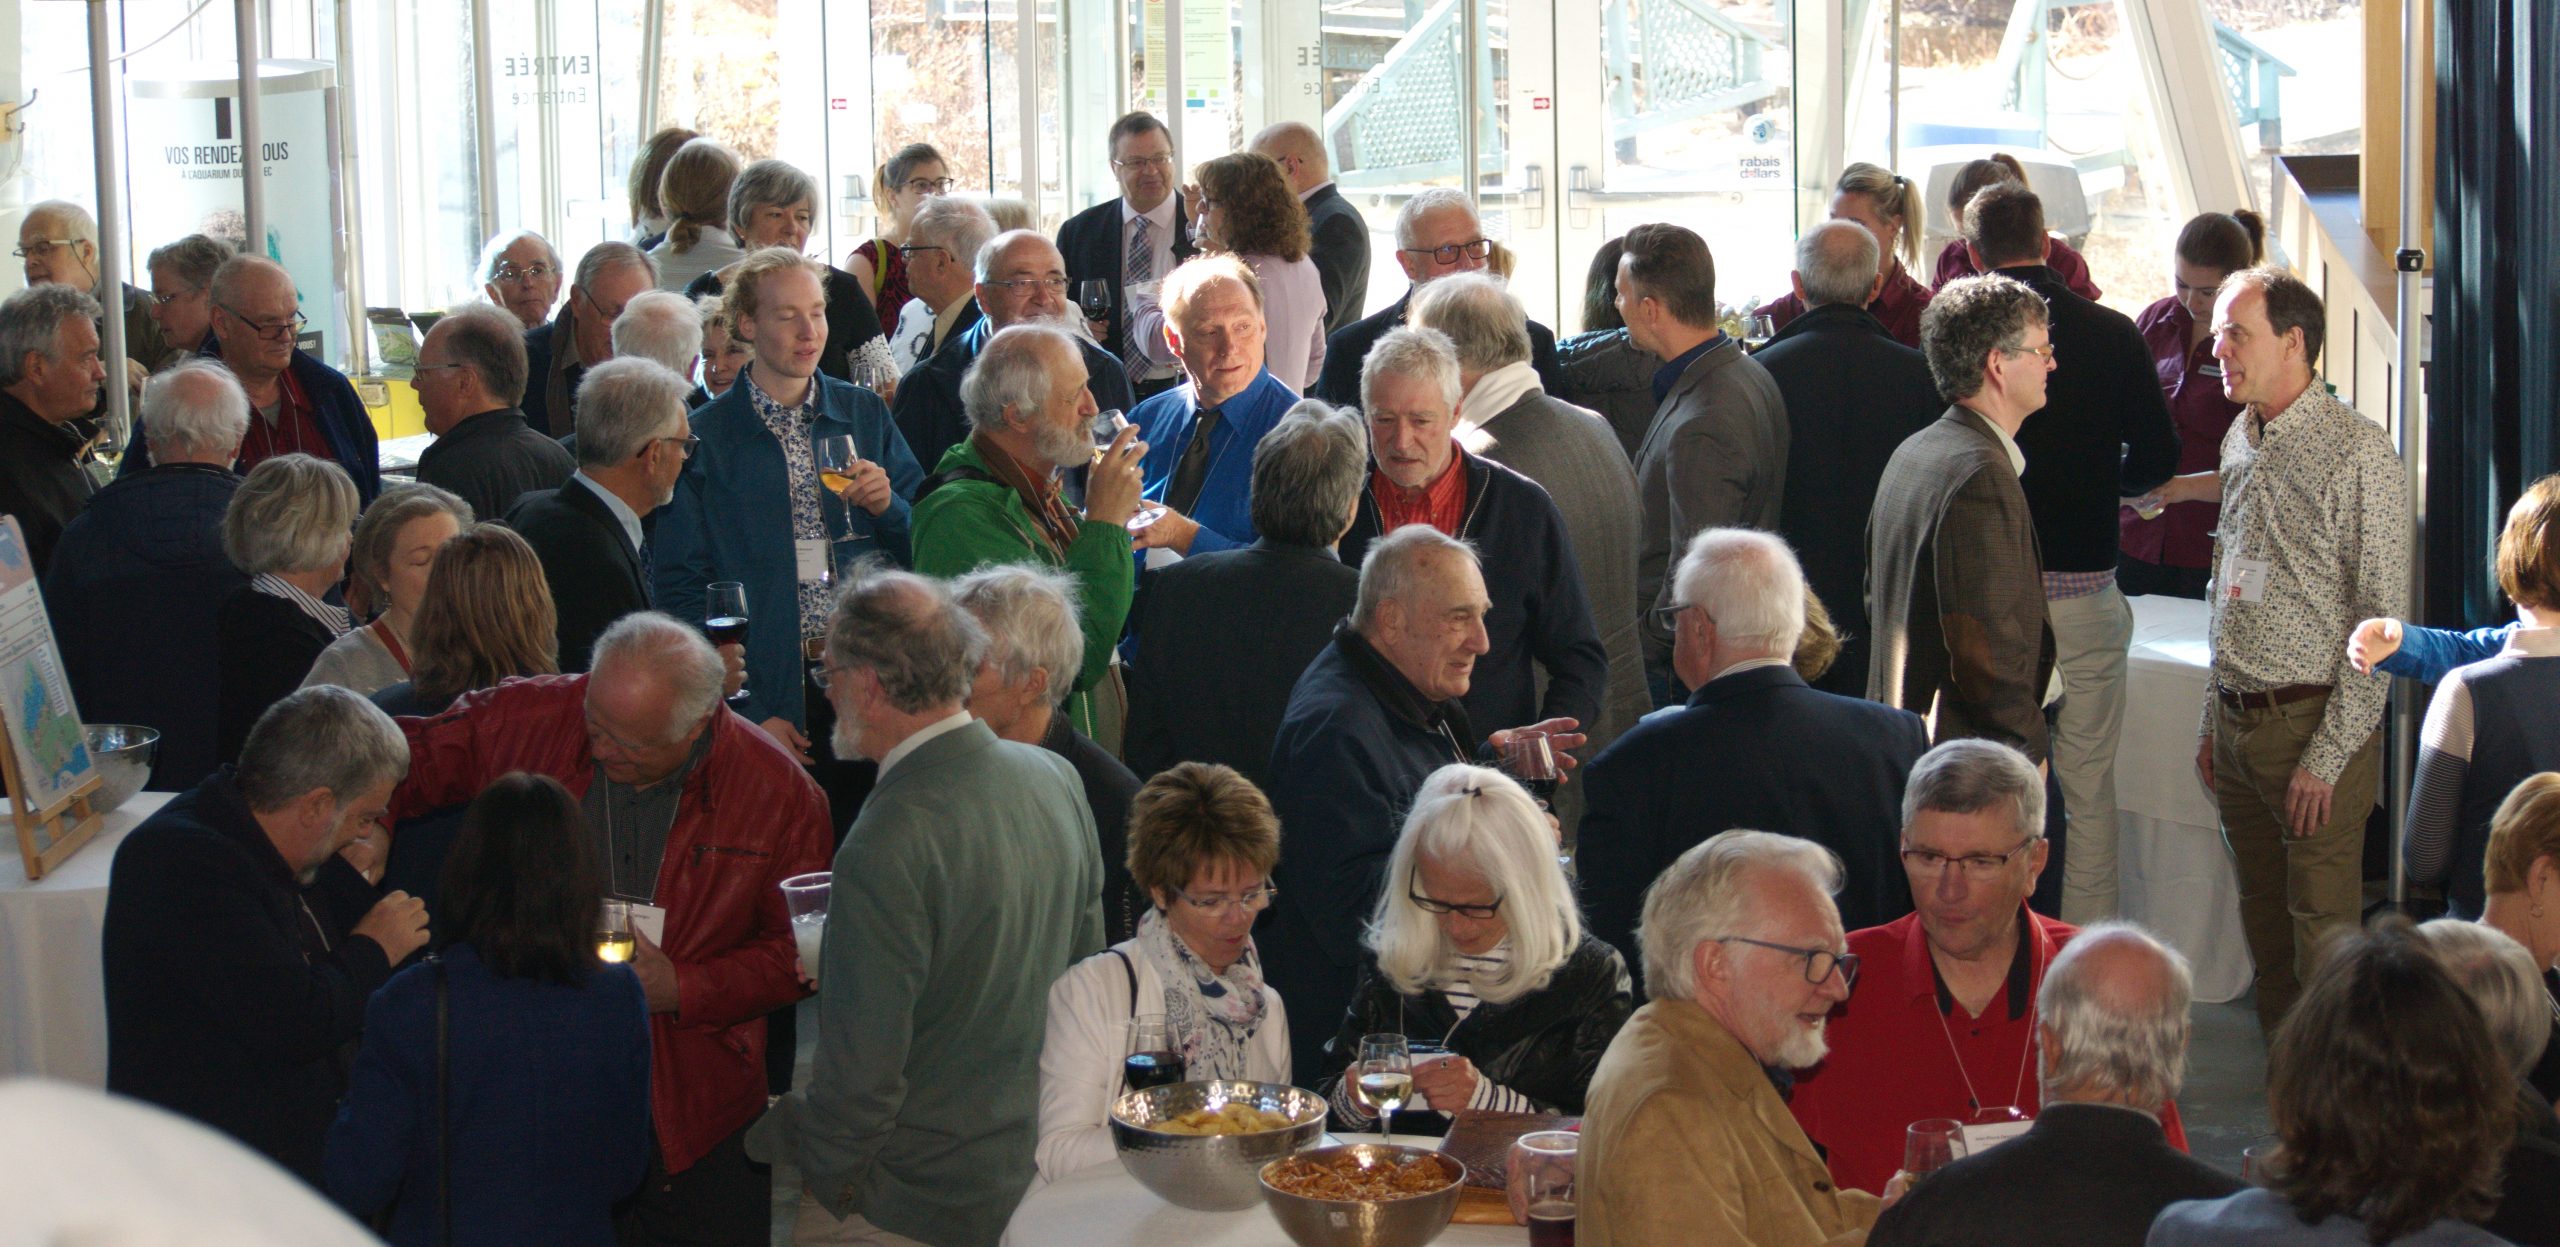 Plus de 150 convives ont participé à la cérémoinie d'ouverture des fêtes célébrant le centième anniversaire de la Société Provancher, à l'Aquarium du Québec, le 2 mai 2019. Photo : Nicole Bruneau.